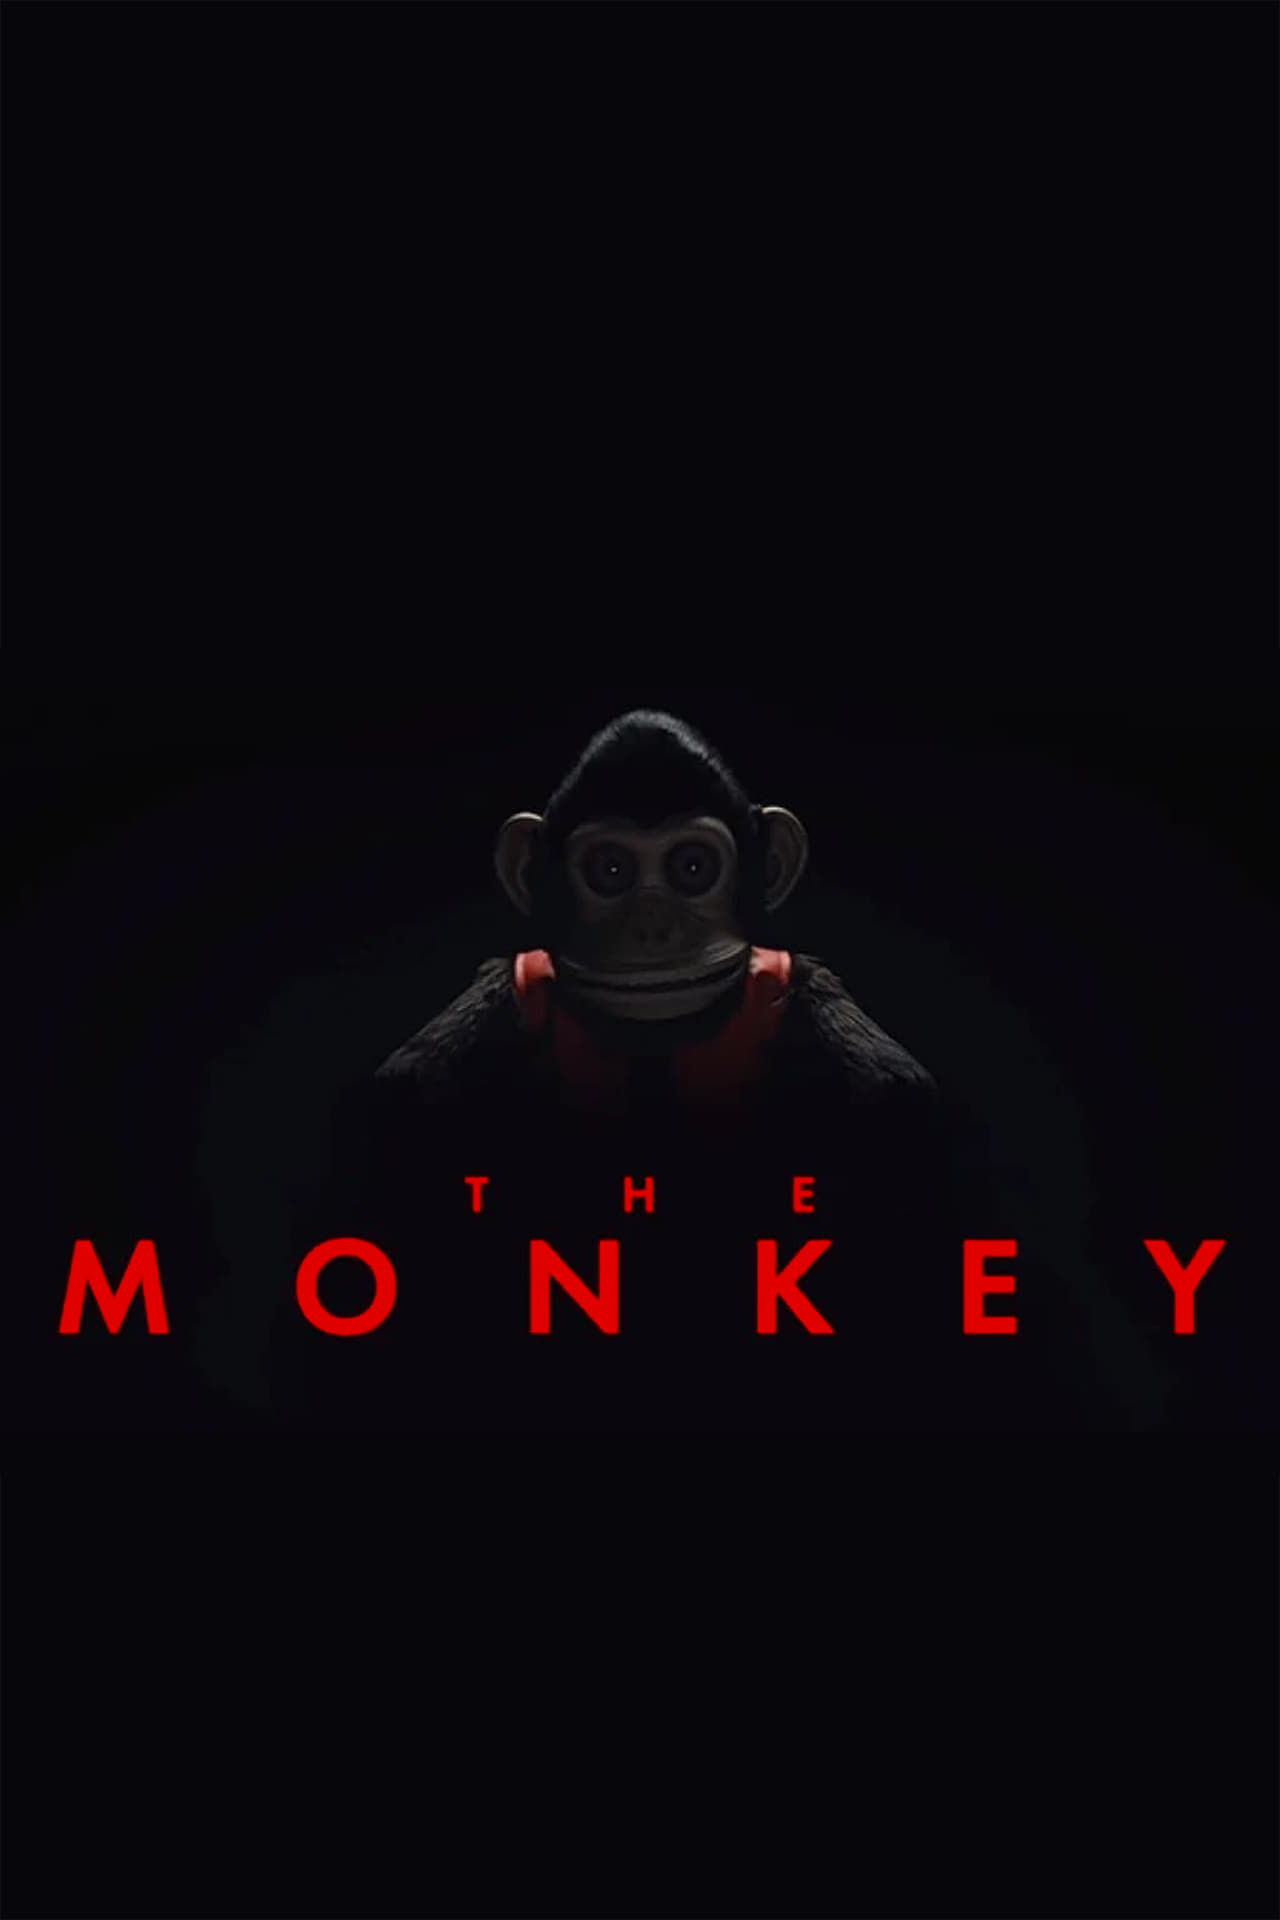 The Monkey